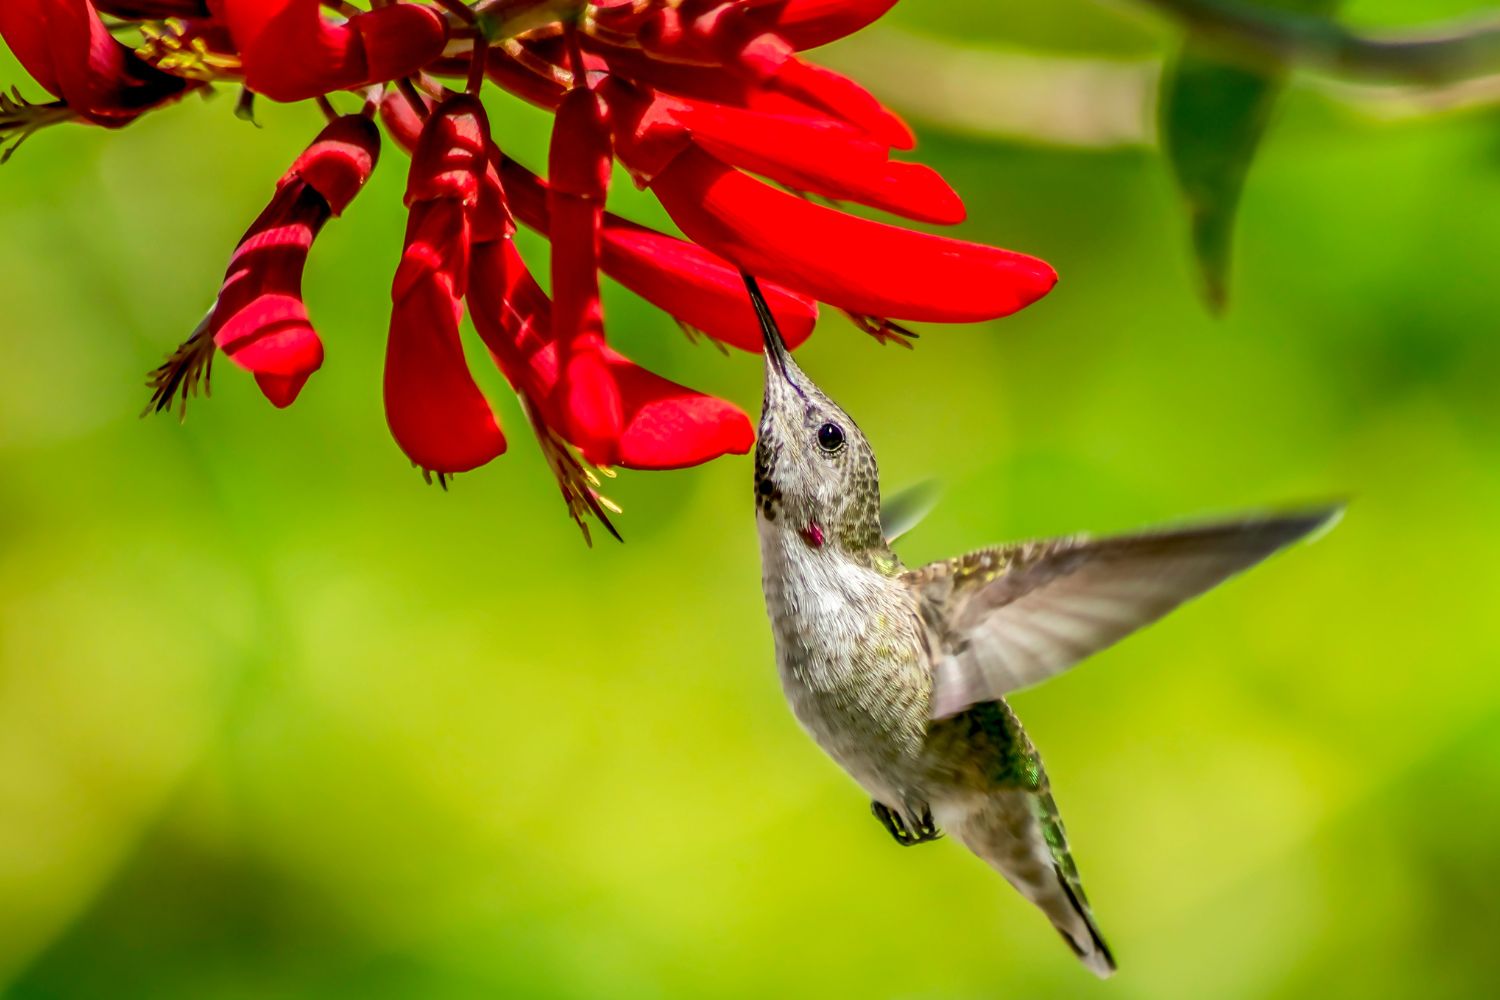 9. Die Lieblingsfarbe eines Kolibris